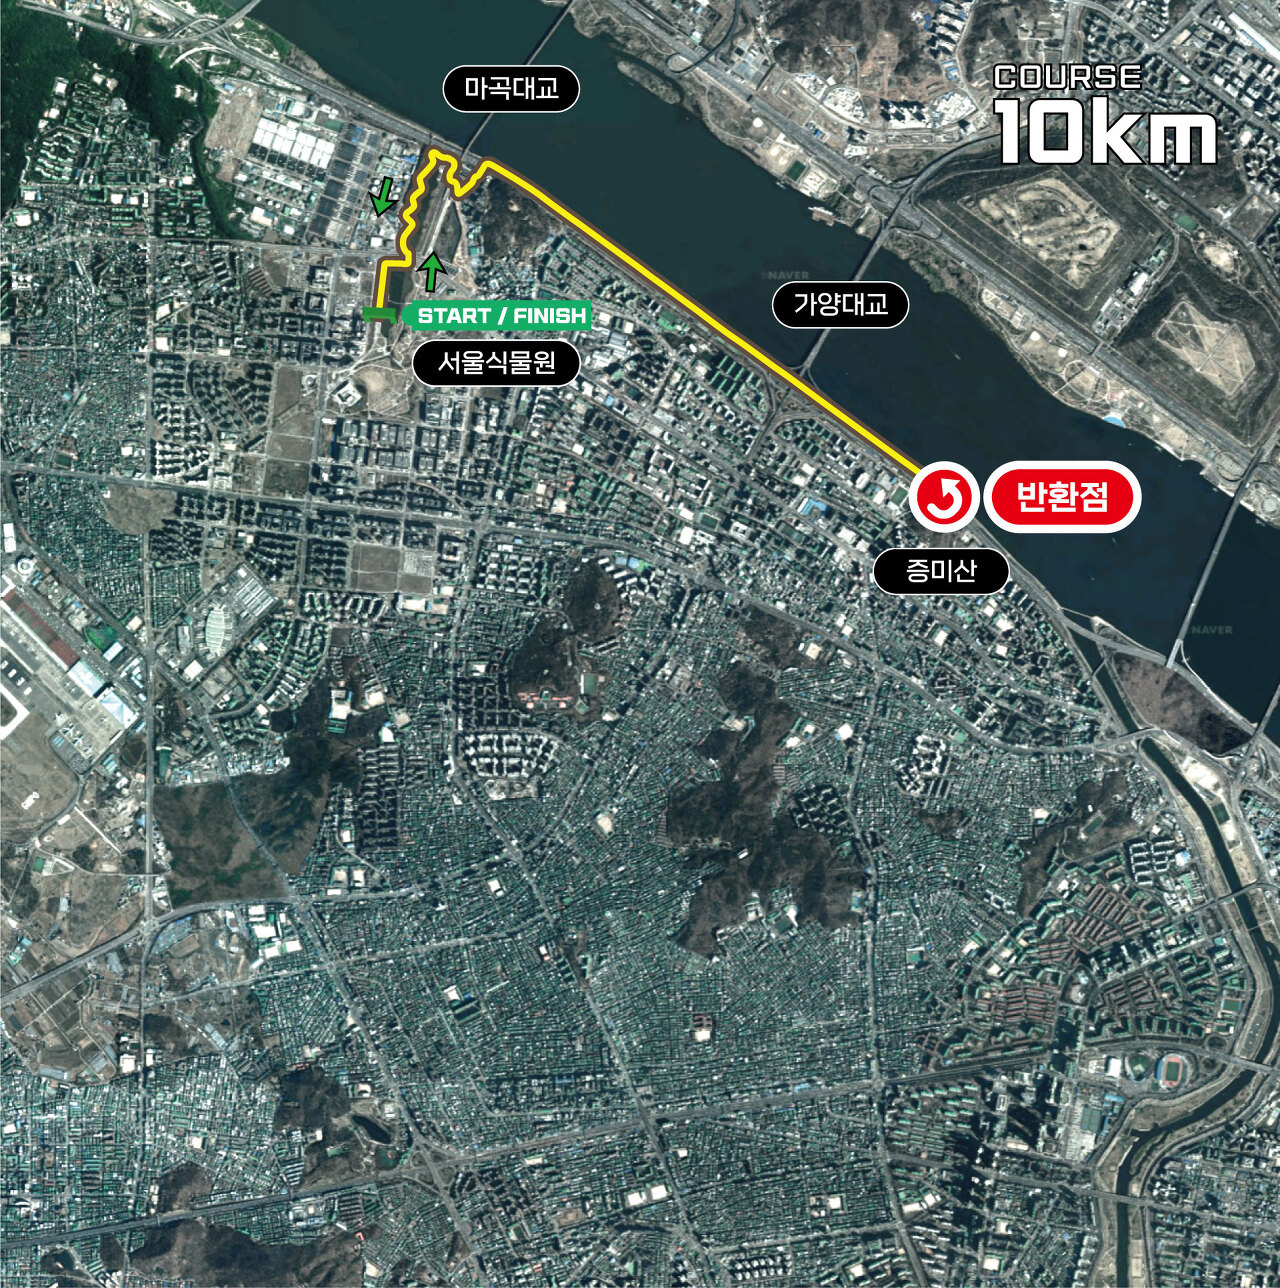 제21회 강서 허준 건강마라톤 대회 10km 코스맵